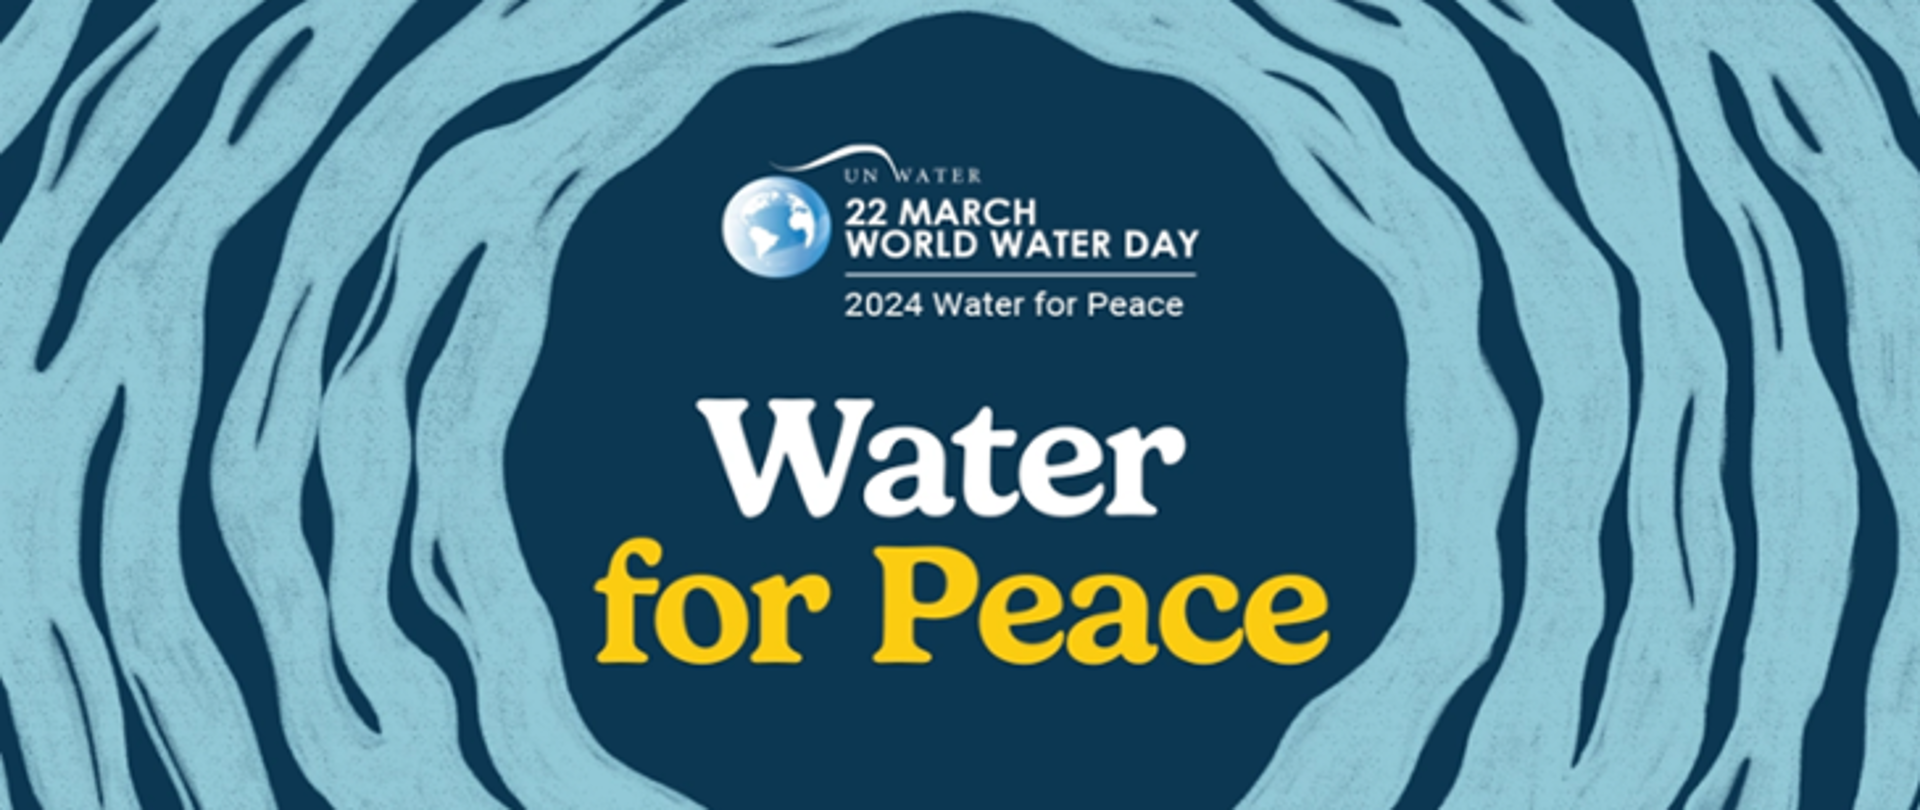 Infografika przedstawia napis "Water for pease" 22 march Światowy Dzień Wody
